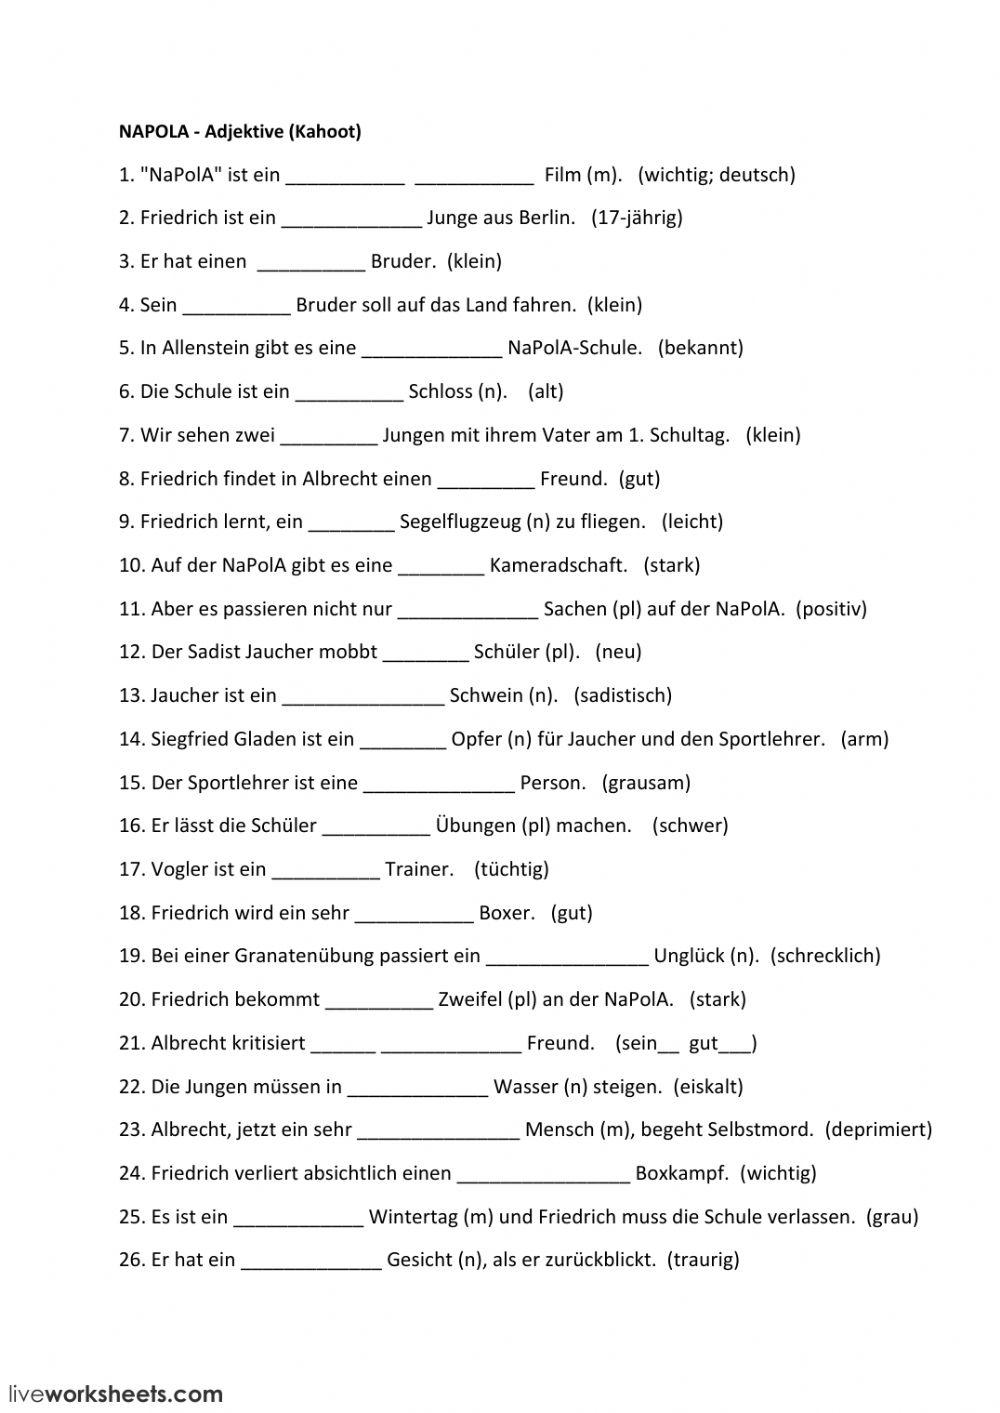 Deutsch Klasse 7 - Napola Adjektive